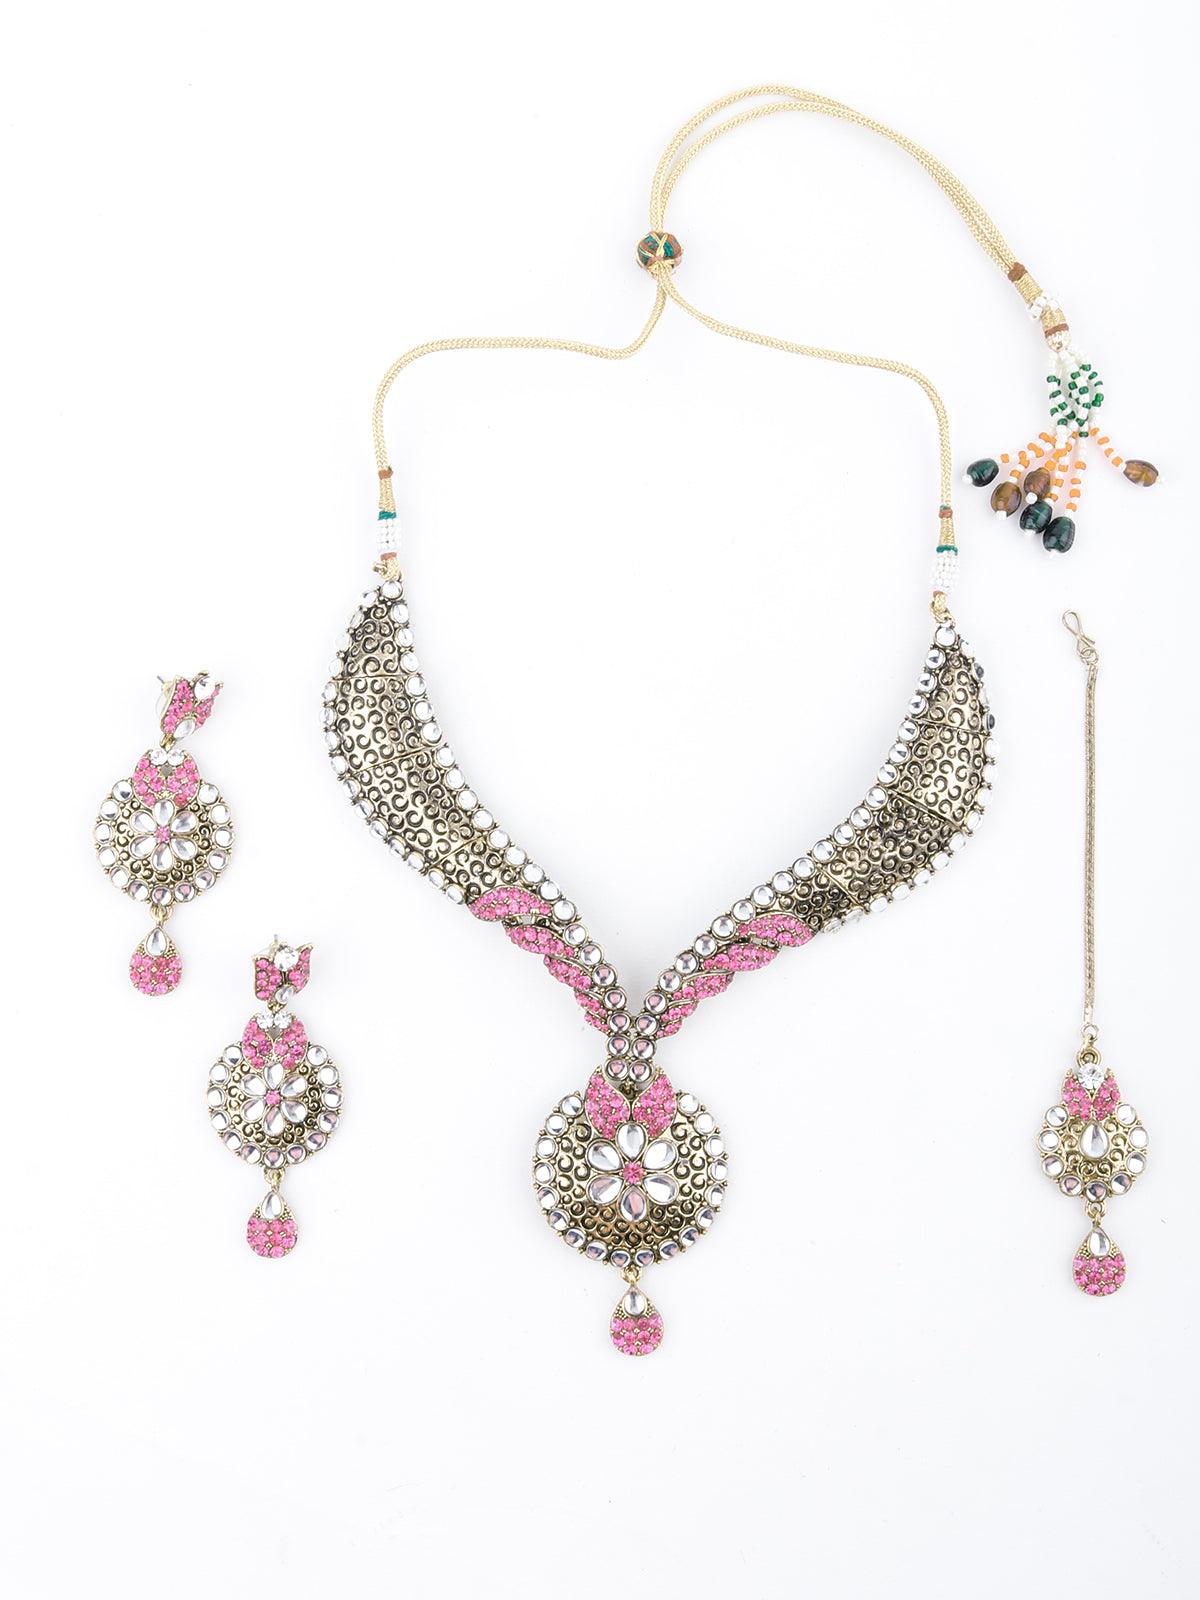 Golden And Light Pink Floral Choker Necklace - Odette